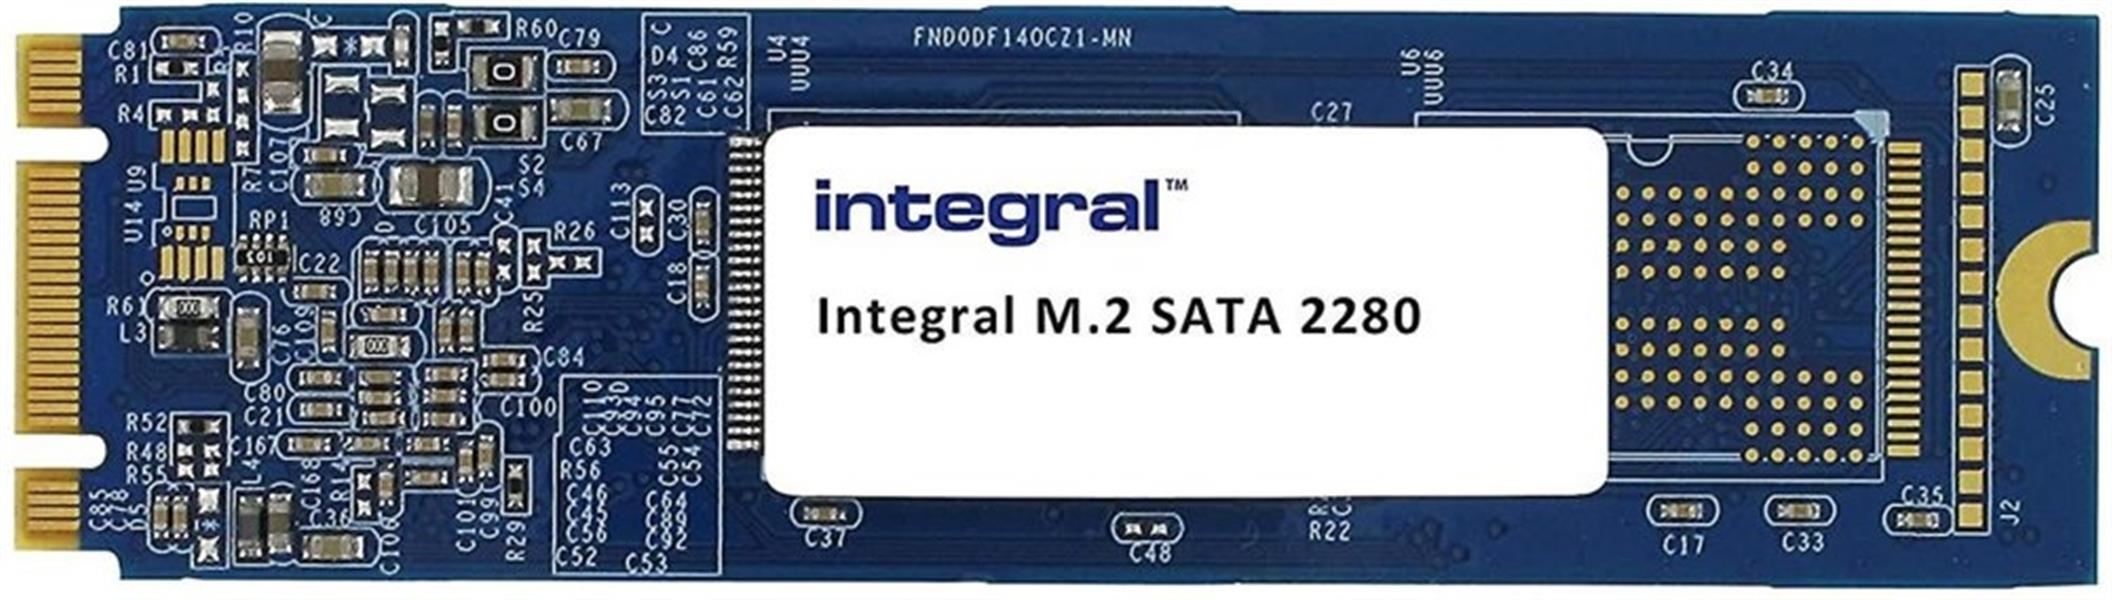 Integral 256GB M.2 SATA III 22X80 SSD (2020 MODEL) 3D TLC NAND